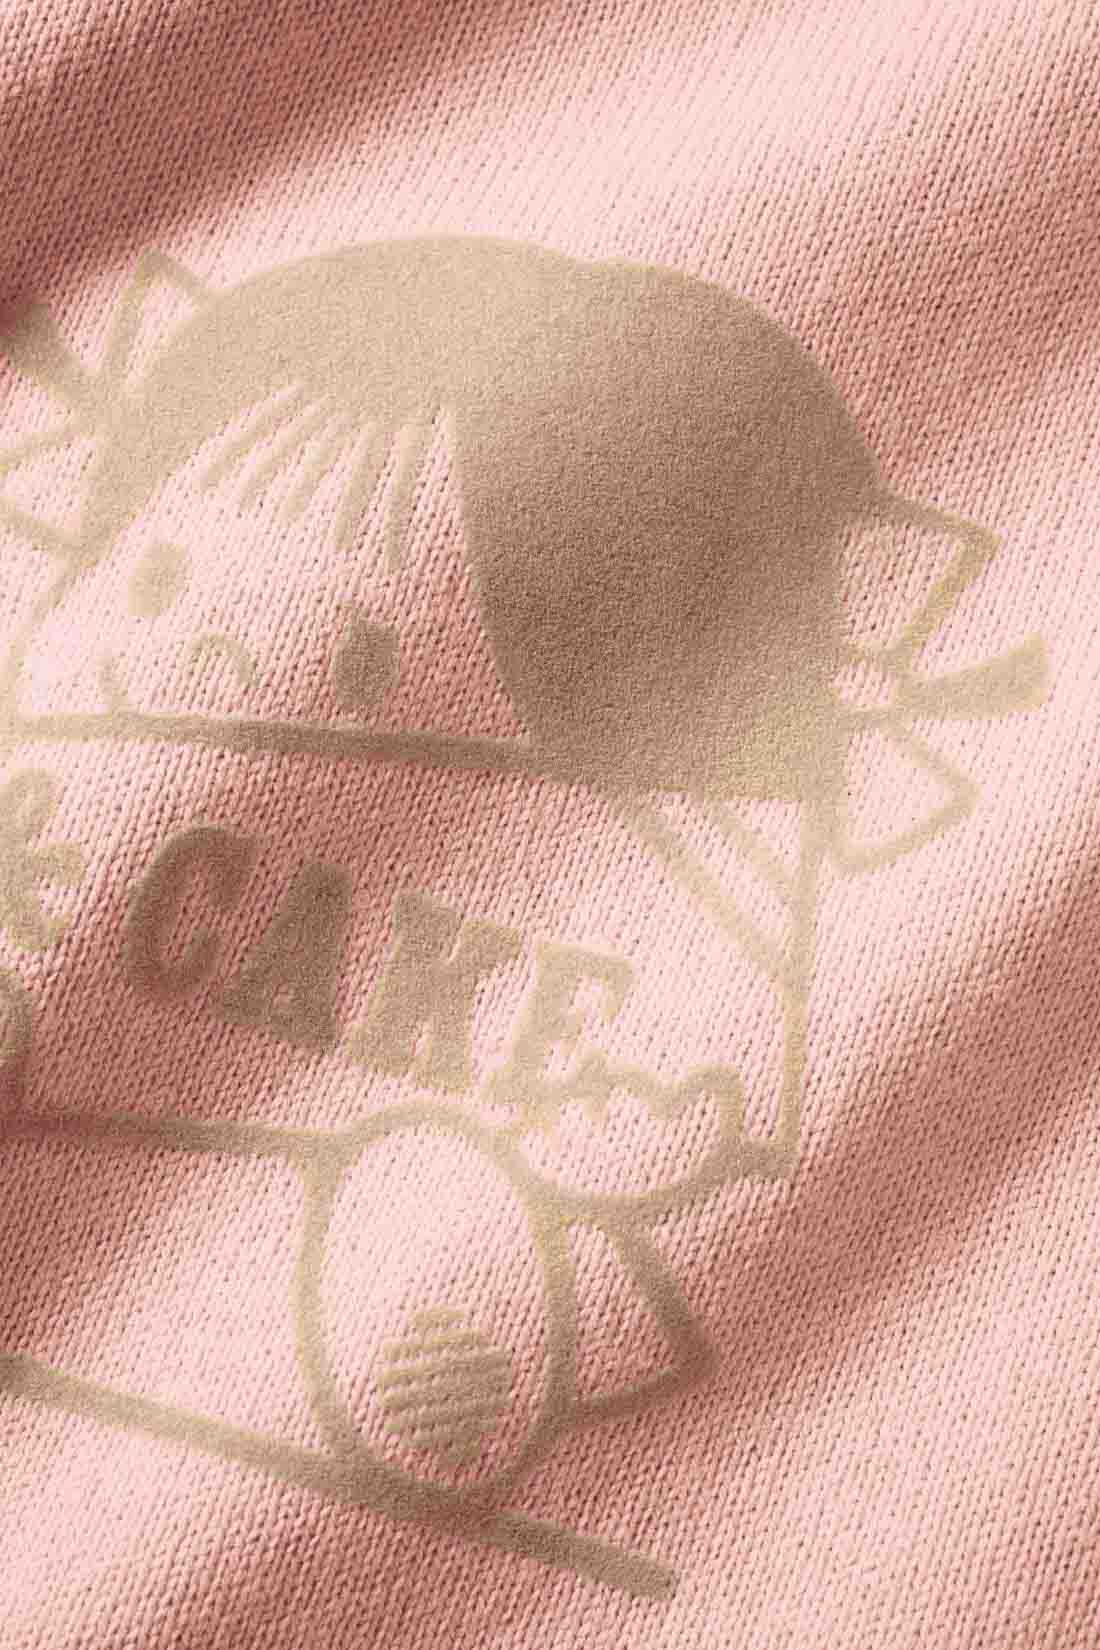 Live in  comfort|Live love cottonプロジェクト リブ イン コンフォート神戸のベーカリーハラダのパンさんとつくったオーガニックコットンのレトロかわいいTシャツ〈ベビーピンク〉|空紡糸を使用した厚みのある生地はオーガニックコットン100％！ フロントのフロッキープリントがおしゃれ。